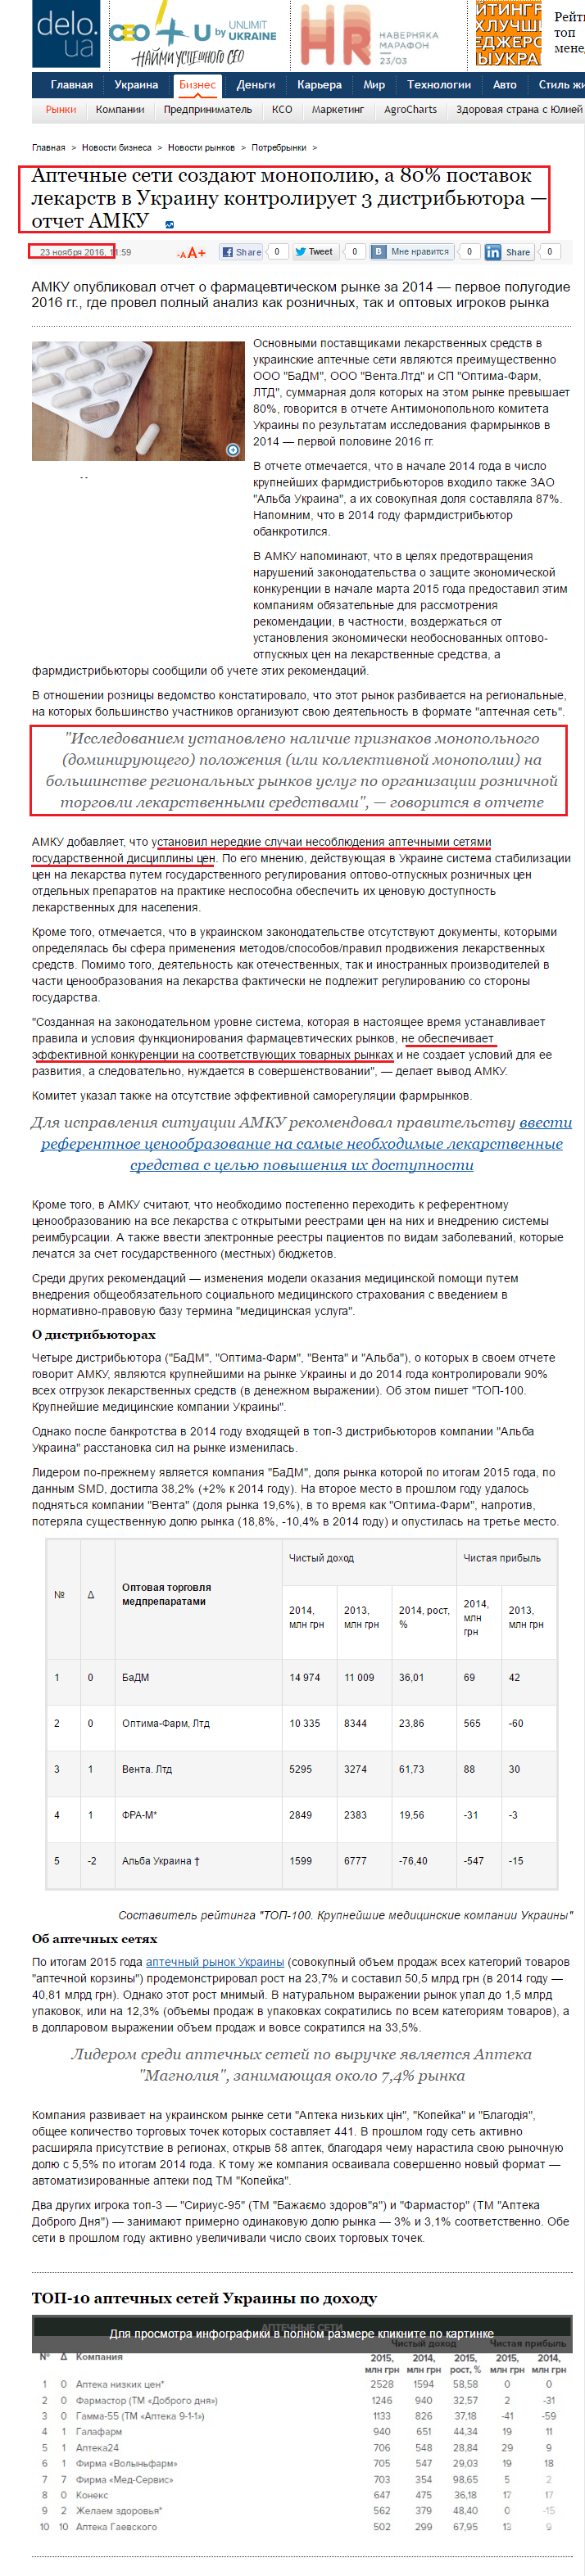 https://delo.ua/business/aptechnye-seti-sozdajut-monopoliju-a-80-postavok-lekarstv-v-ukra-325399/